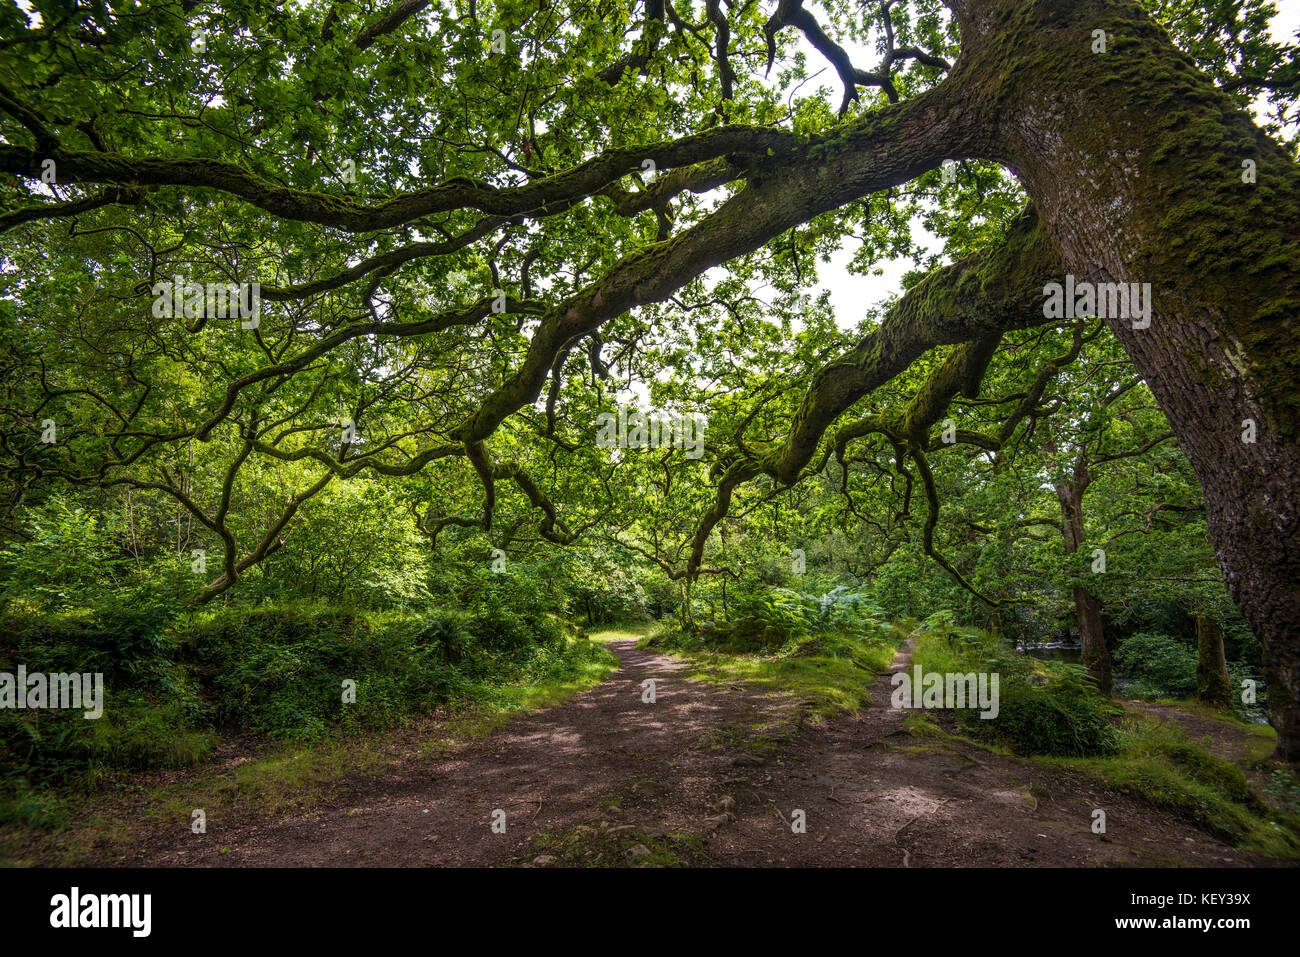 Dewerstone Wood, Dartmoor. Devon. Oberlauf des Flusses Plym. Wunderschöne, aber chaotische Wälder mit vielen umgestürzten Bäumen. Viele Pilze. Nr Shaugh Bridge Stockfoto